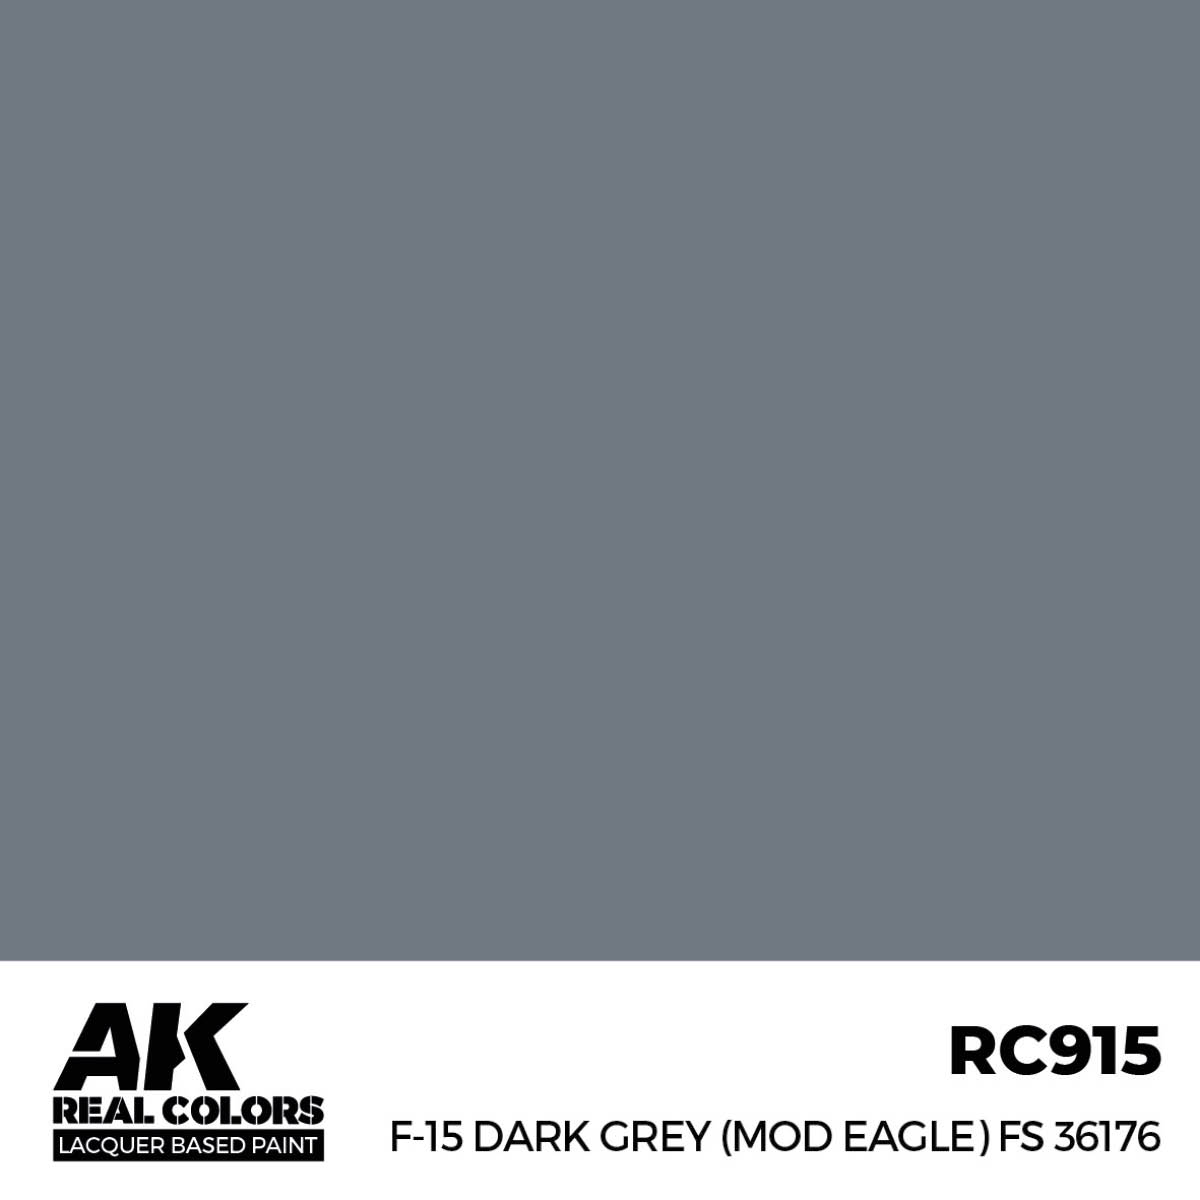 F-15 Dark Grey (Mod Eagle) FS 36176